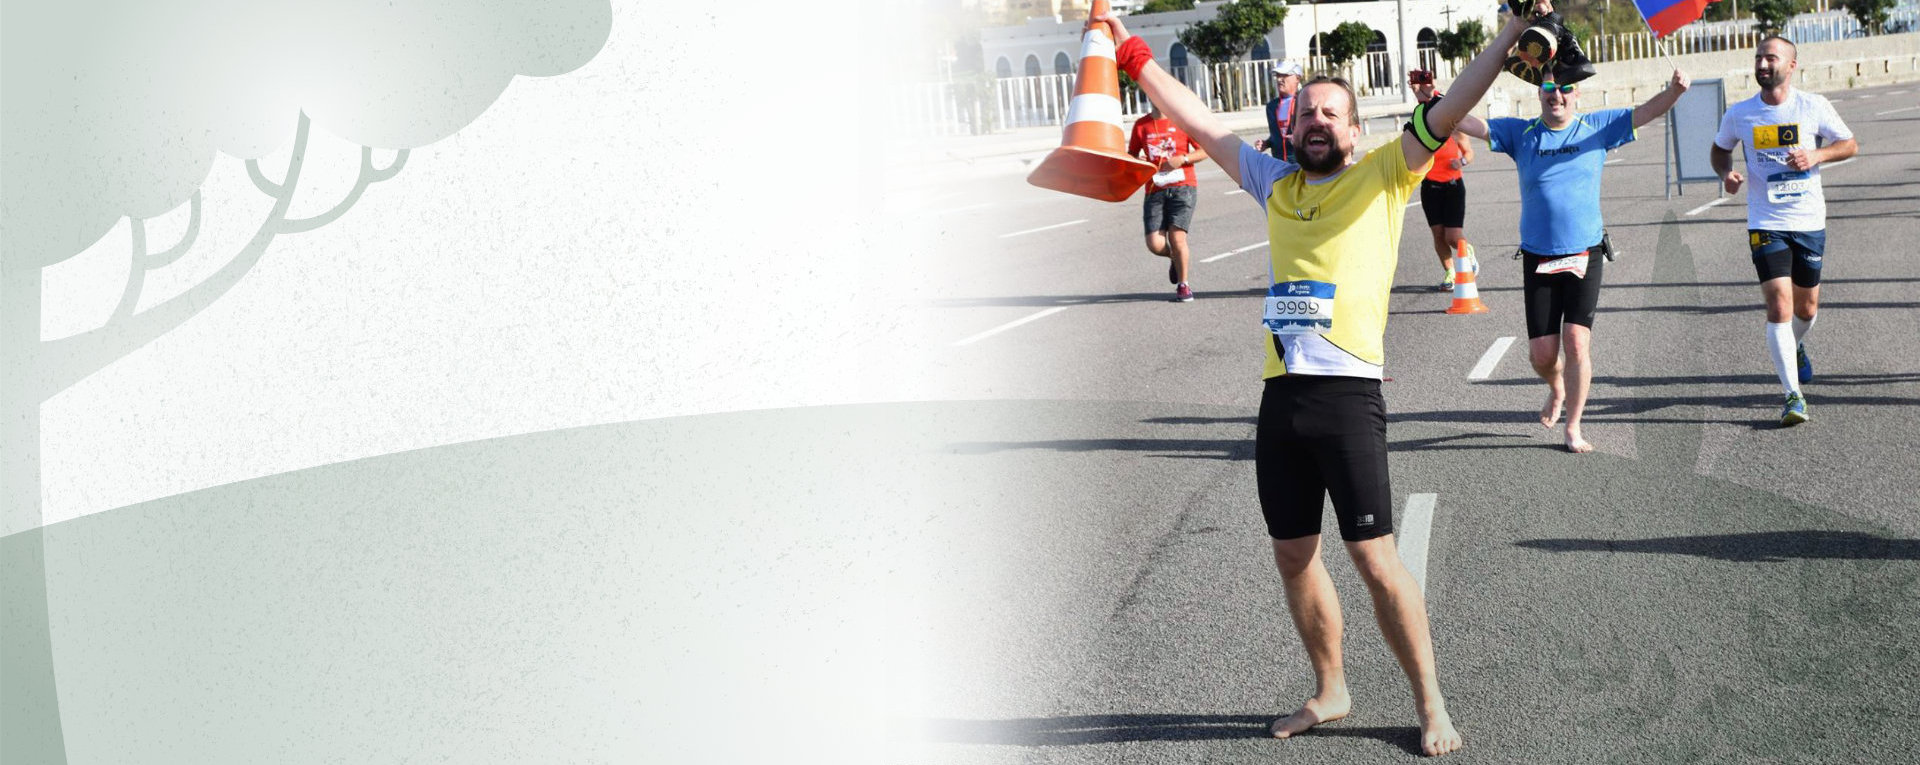 Premagaj Marka na 42 km in si prisluži startnino na maratonu!